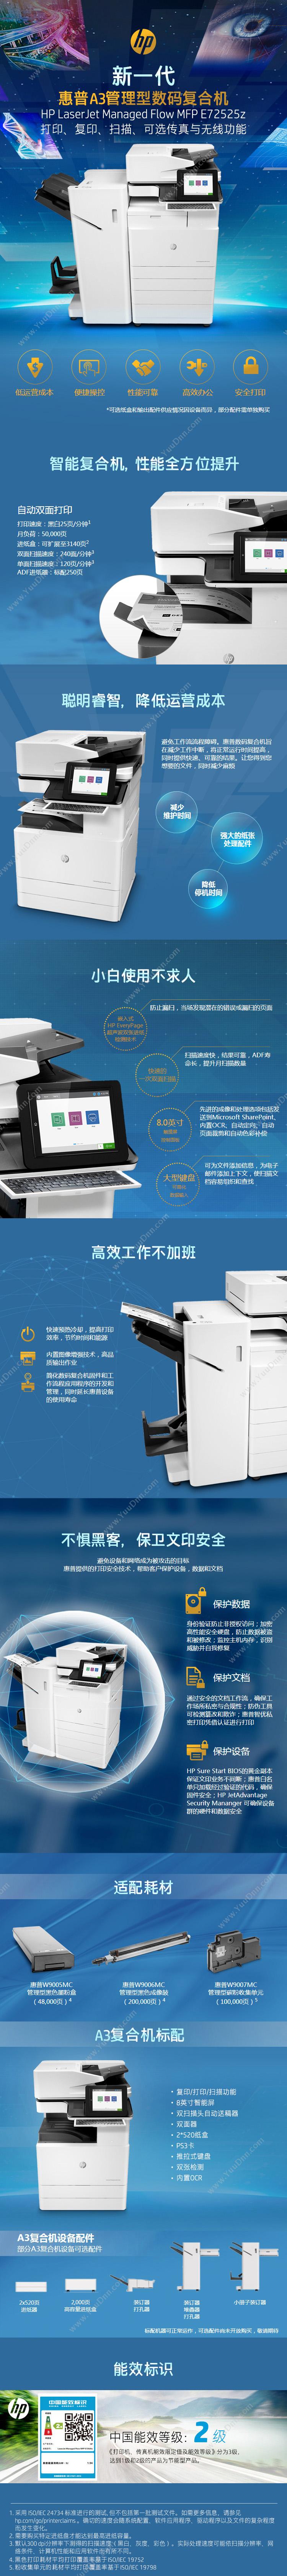 惠普 HP A3X3A59AE72525z 激光复合打印机